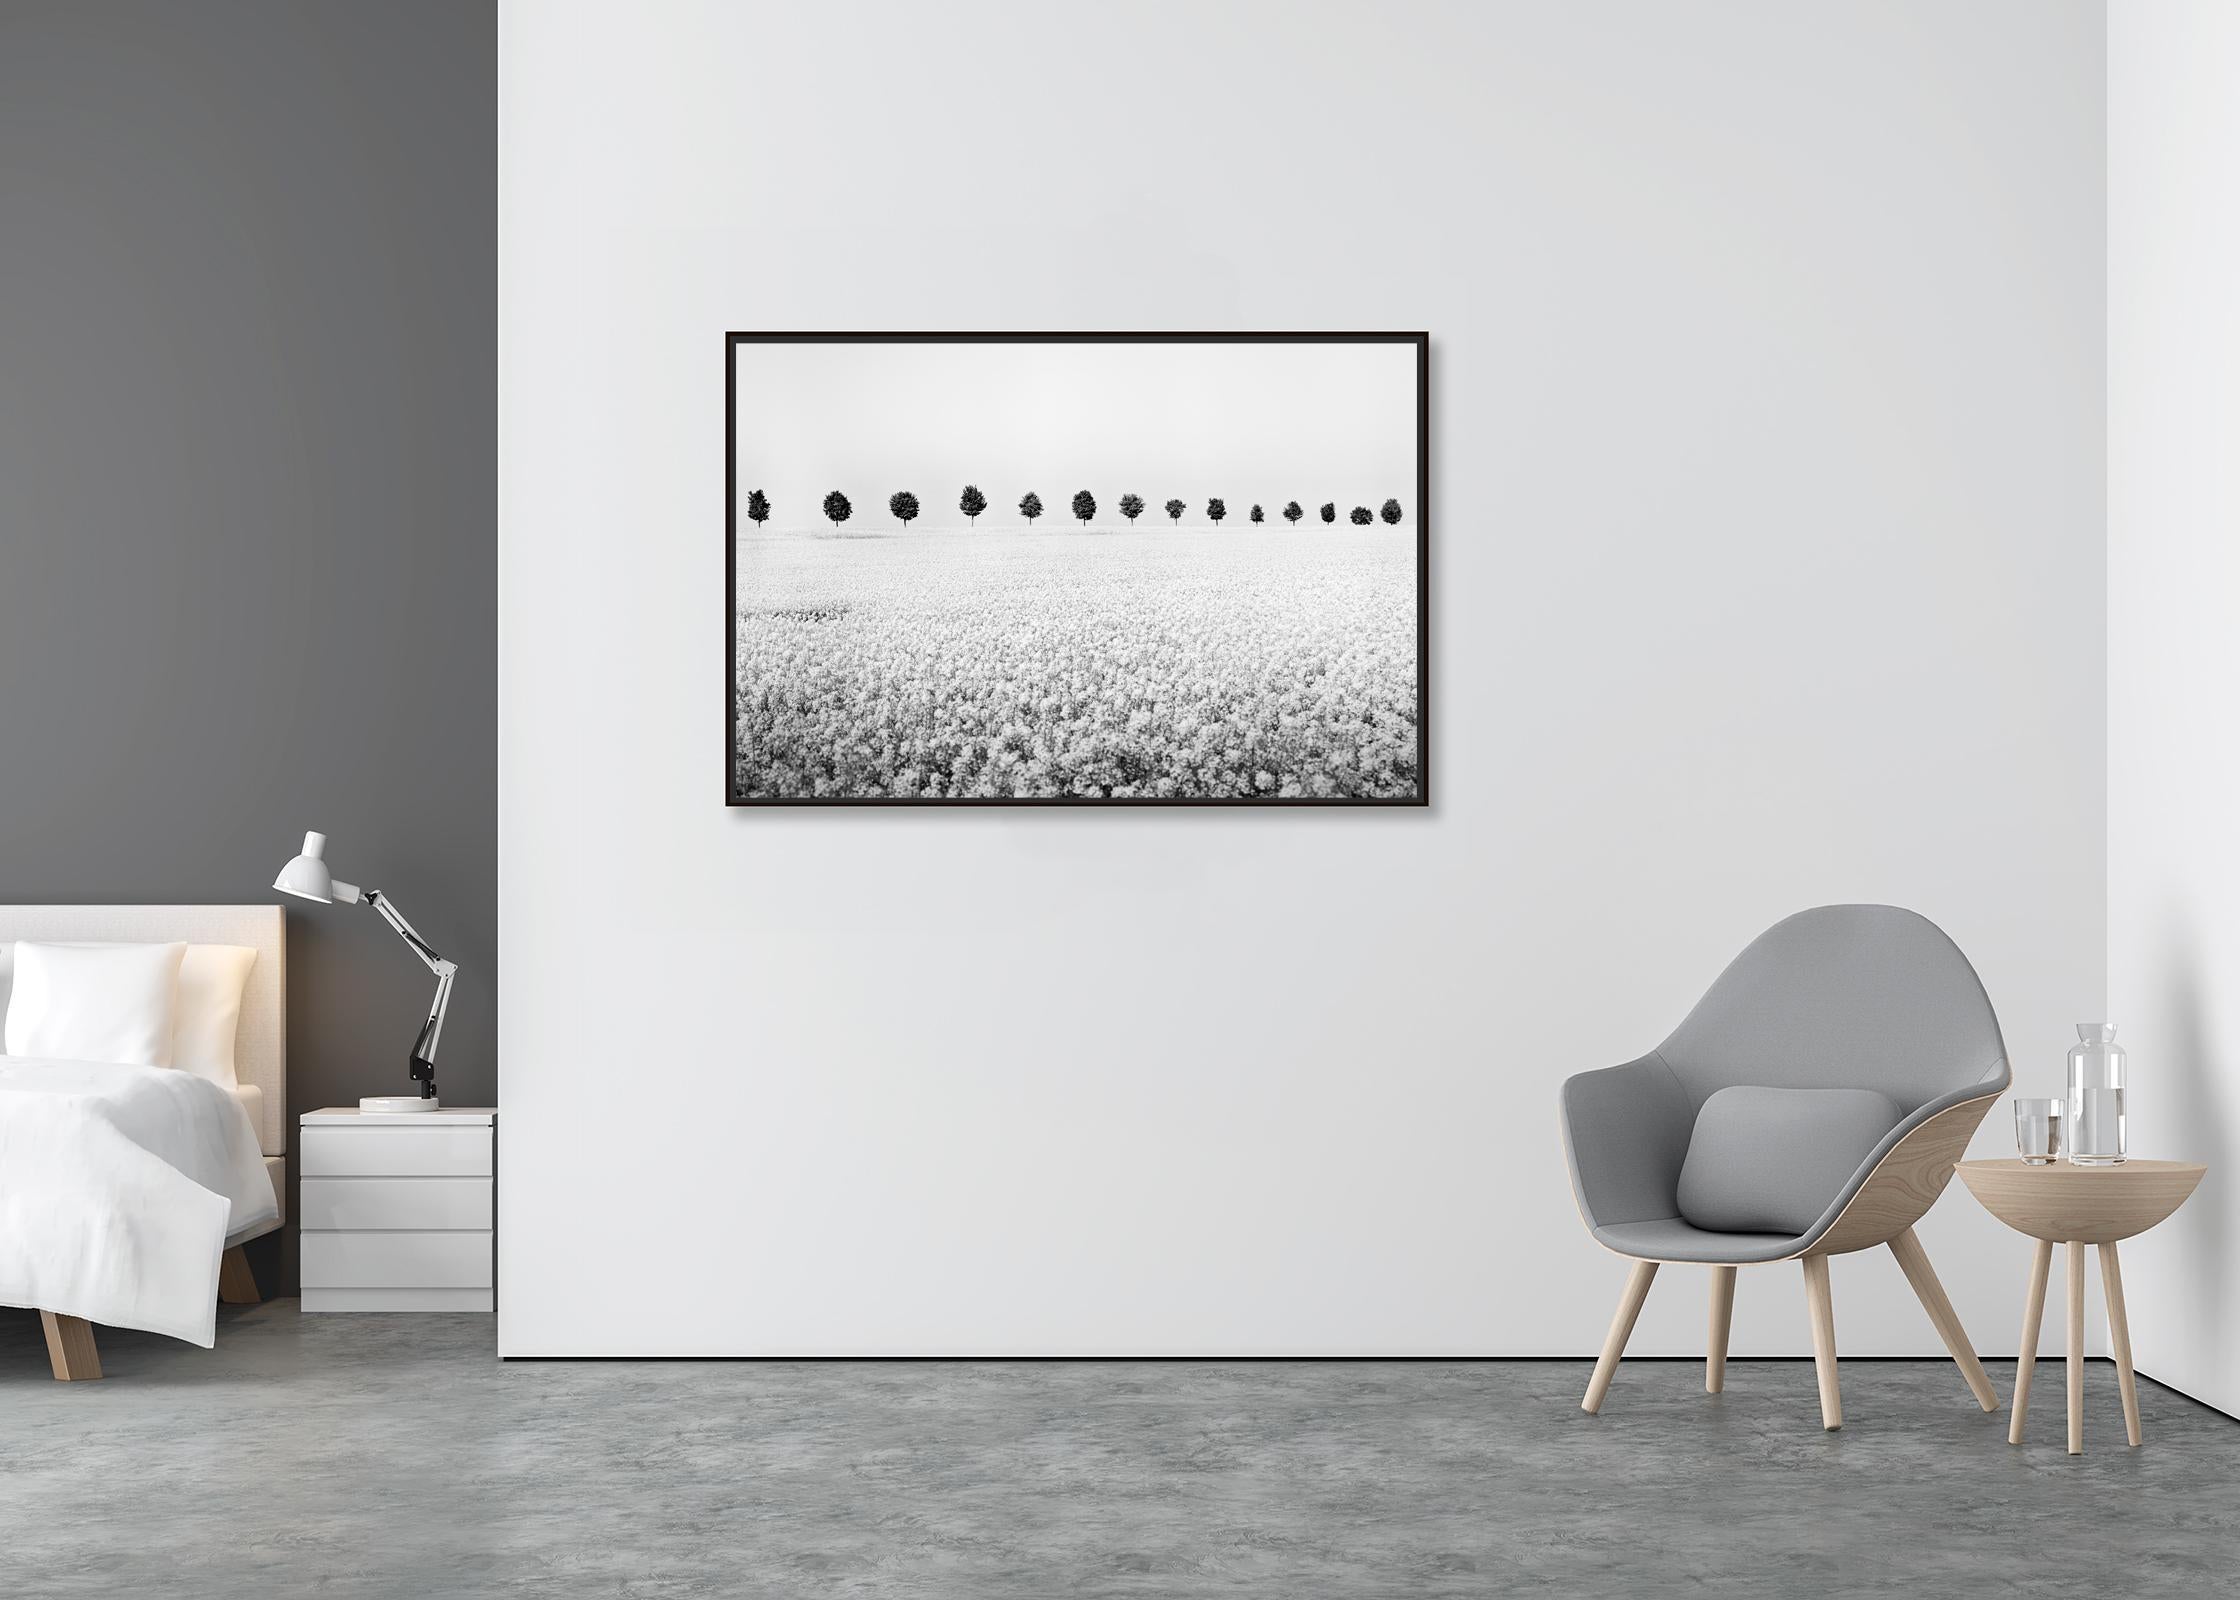 Messingica Napus-Blumenserie in Schwarz-Weiß, minimalistische Landschaftsfotografie (Minimalistisch), Photograph, von Gerald Berghammer